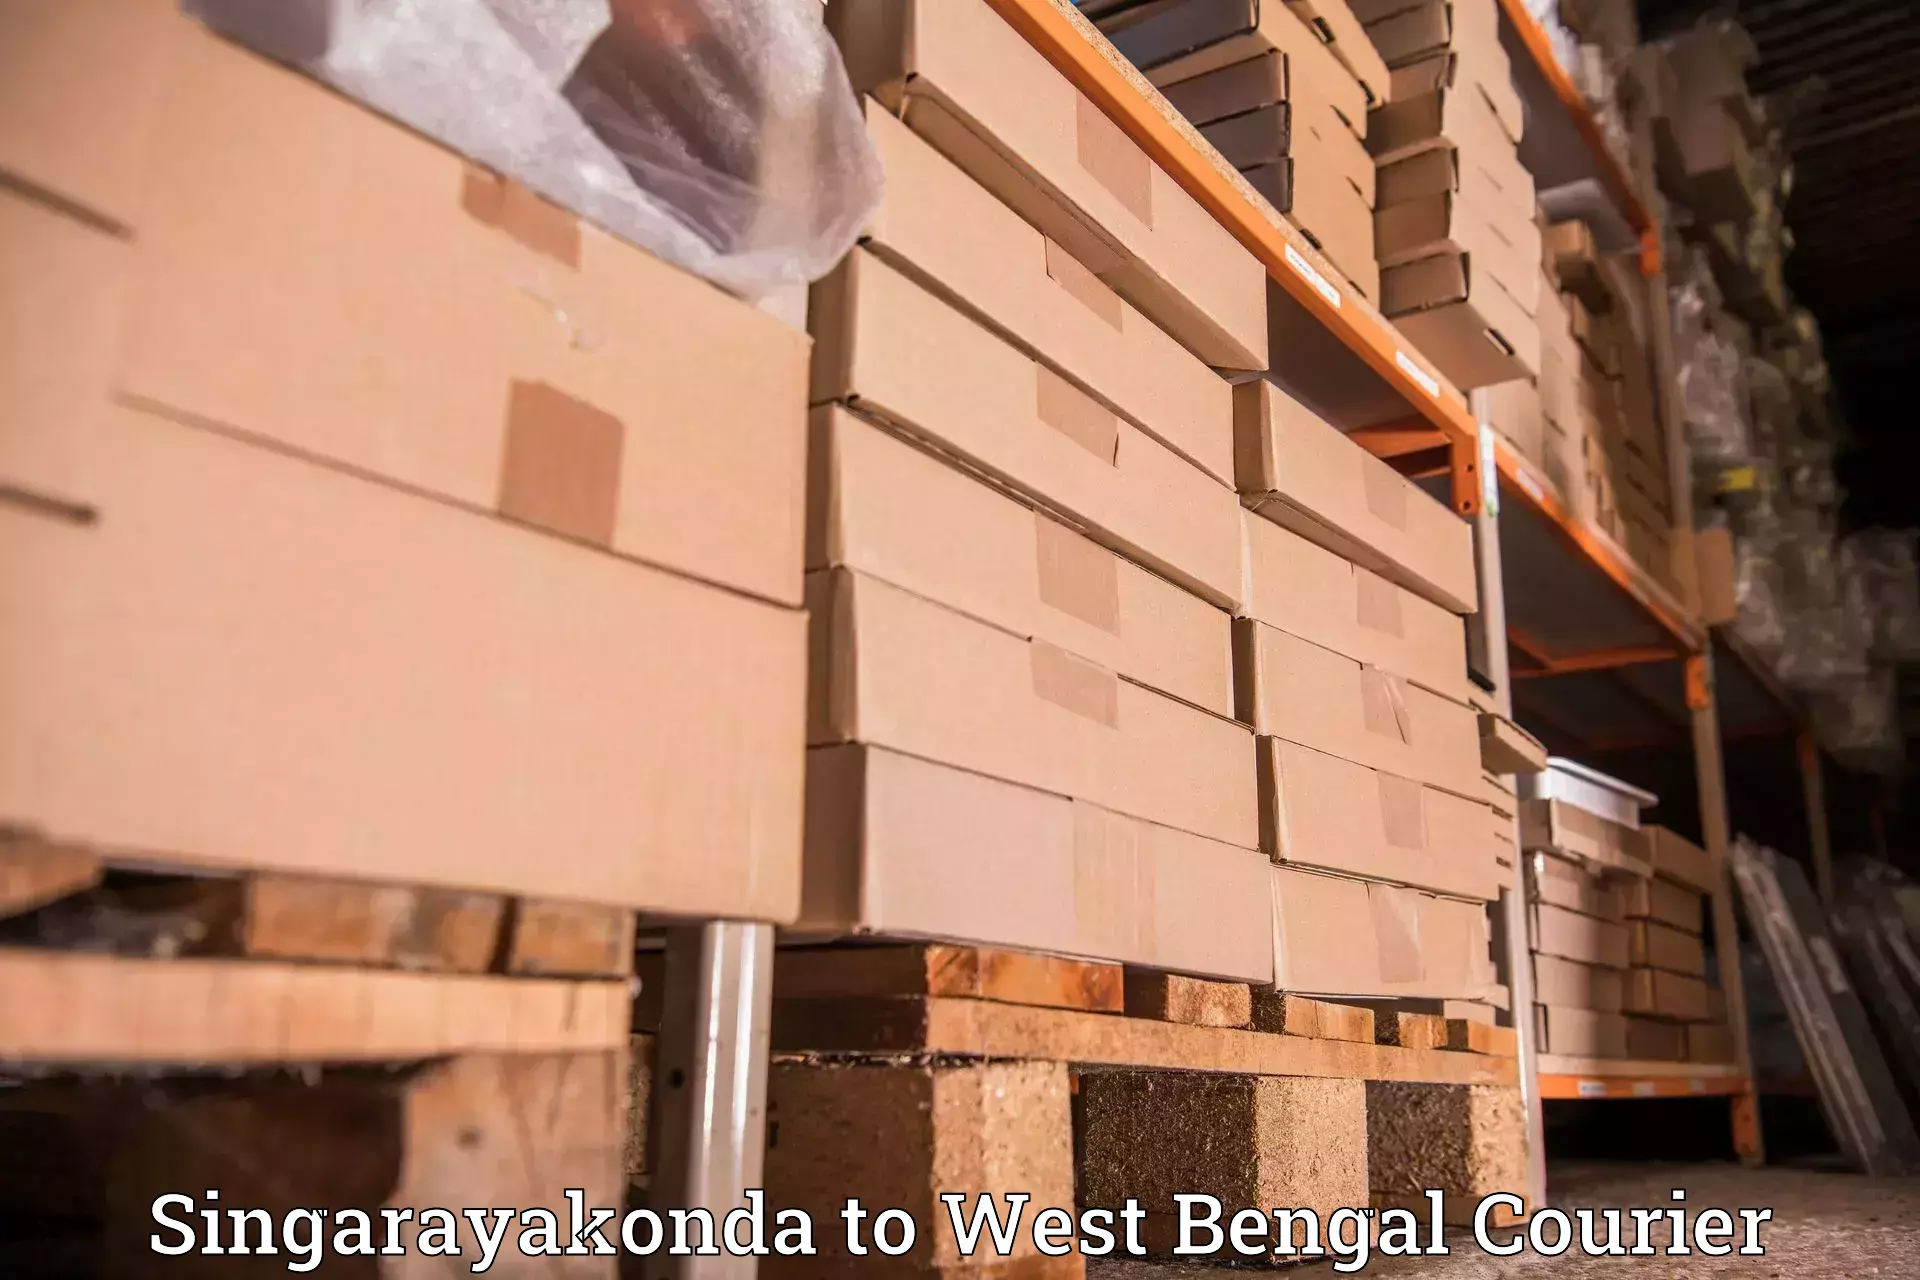 Business shipping needs Singarayakonda to Birbhum